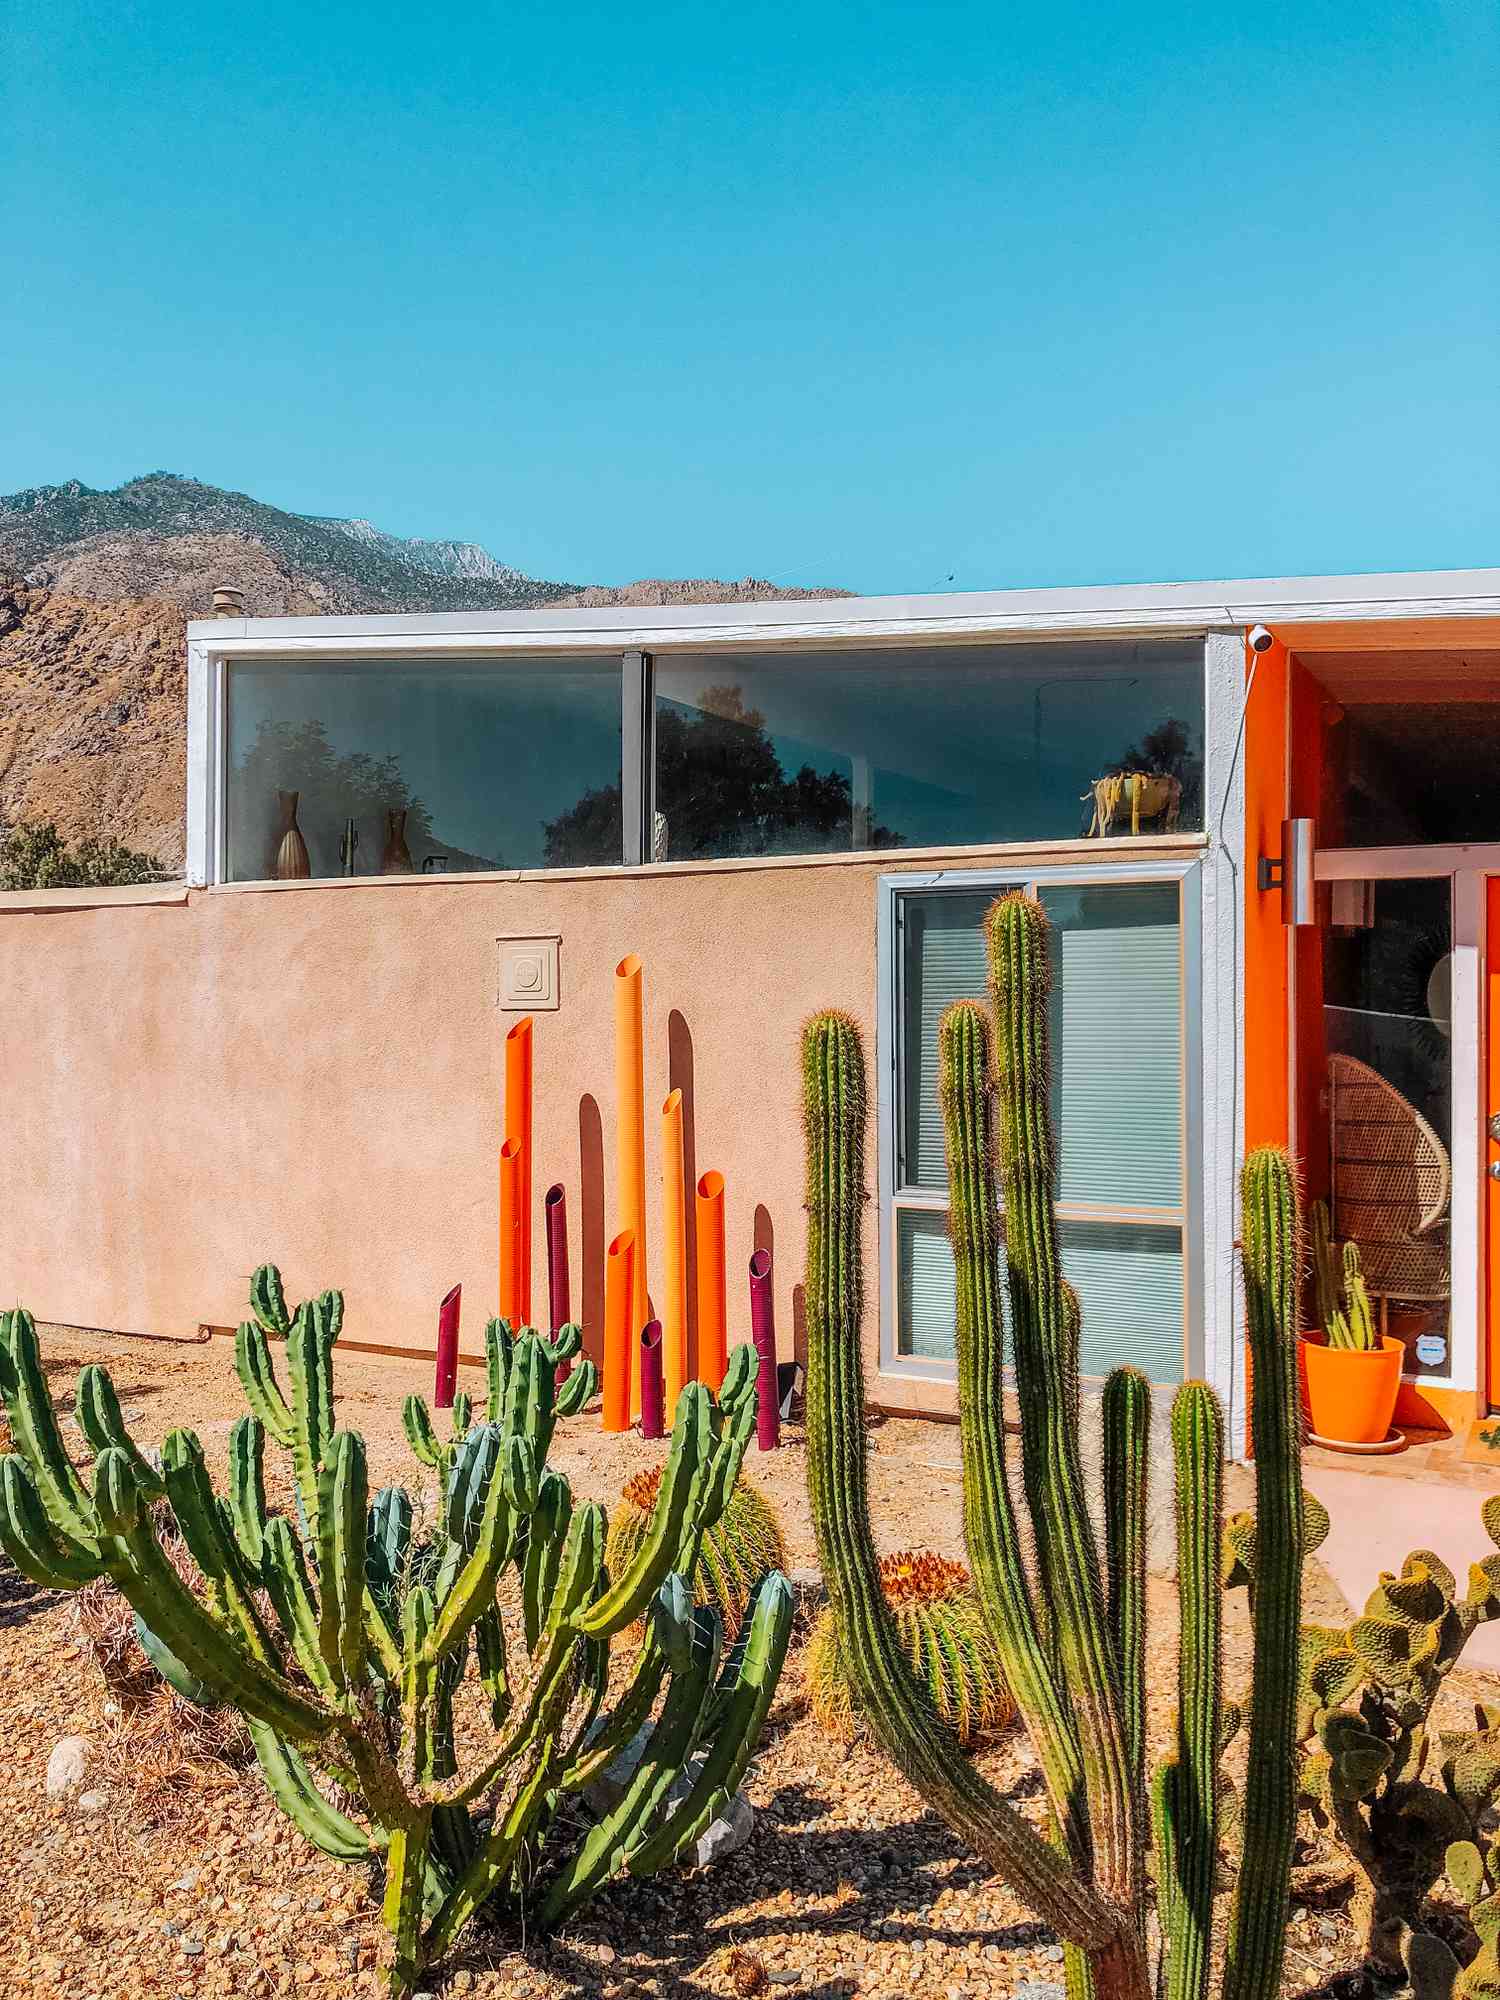 casa colorida no deserto de meados do século